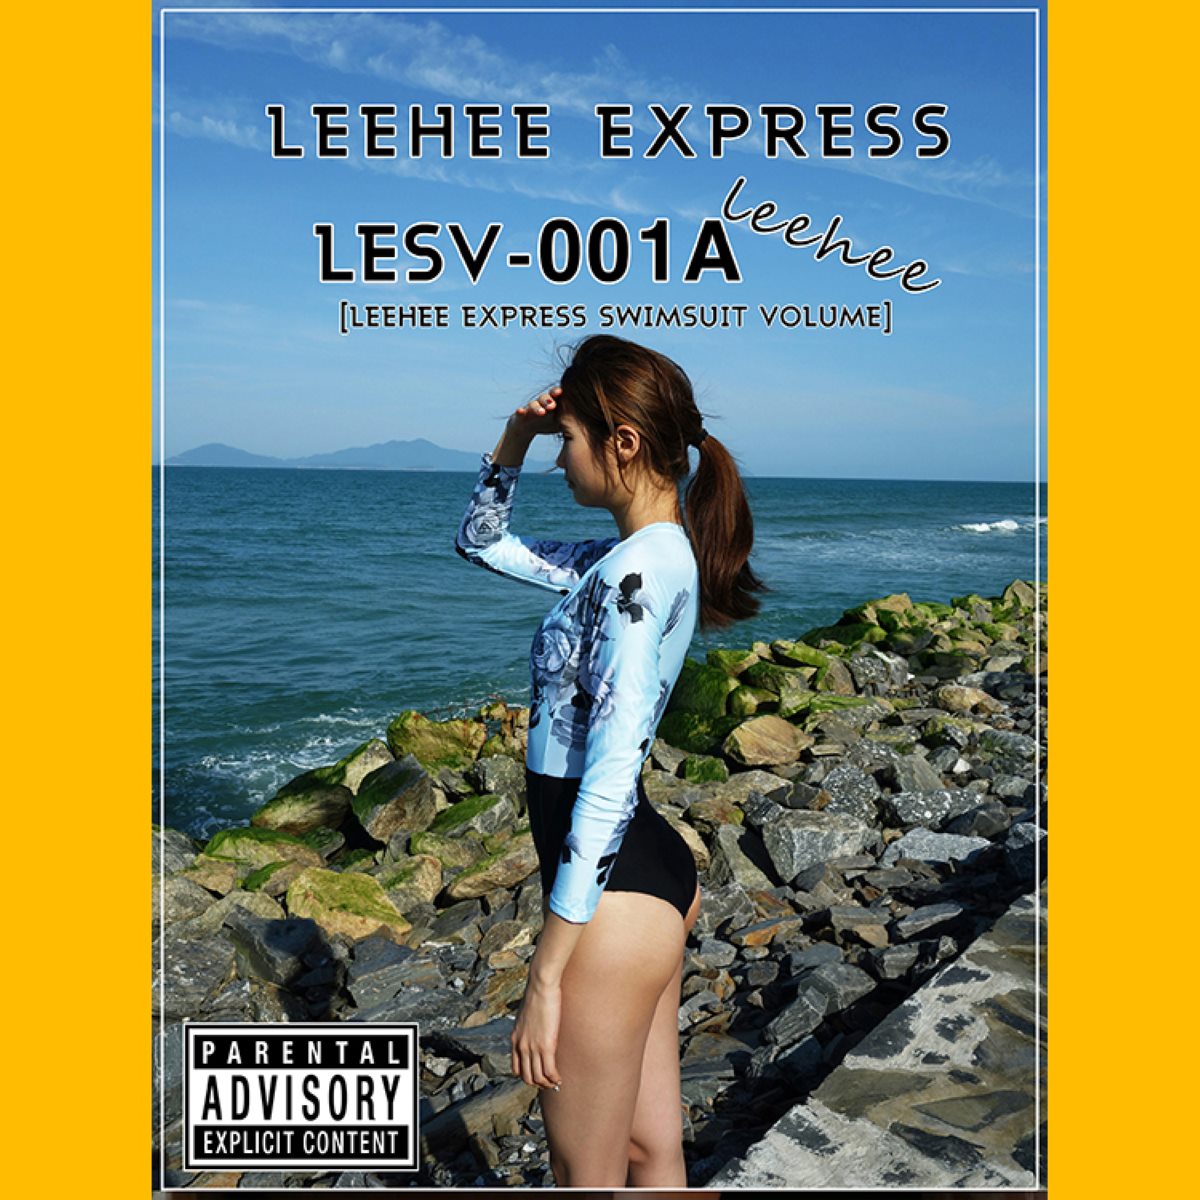 LEEHEE EXPRESS LESV 001A LEEHEEEUN 0050 5883645997.jpg